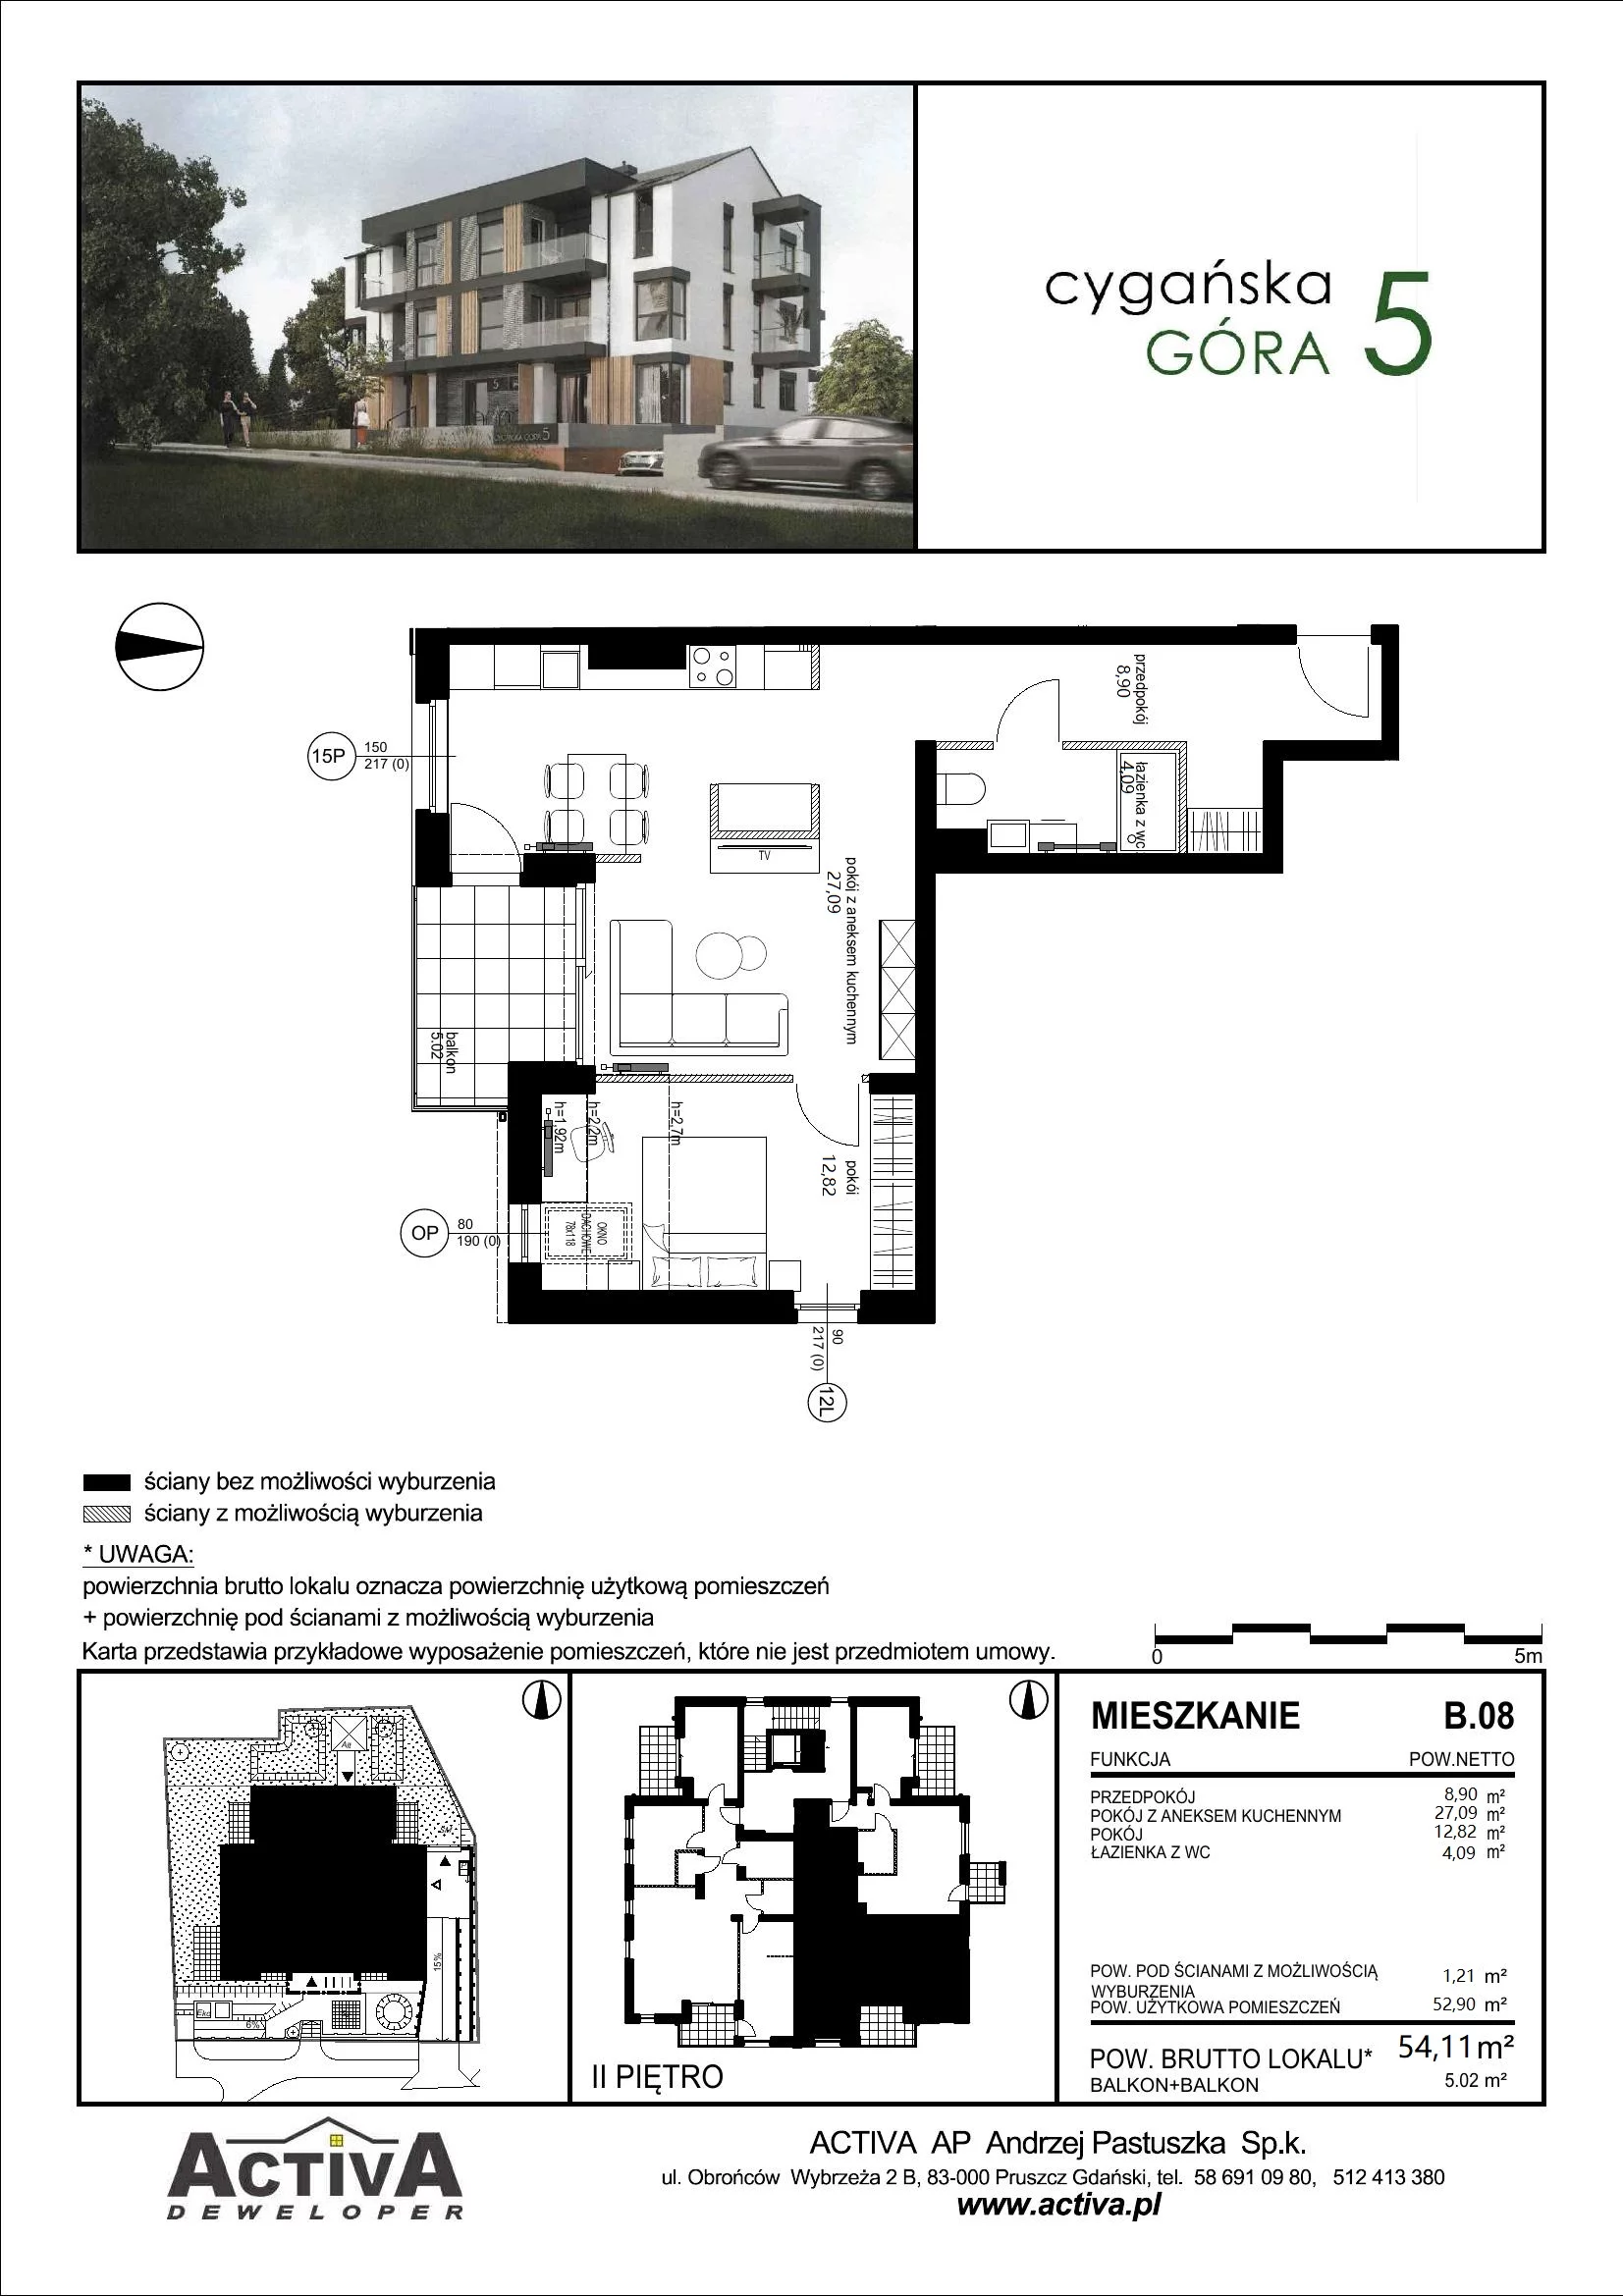 Mieszkanie 54,11 m², piętro 2, oferta nr B.08, Cygańska Góra 5, Gdańsk, Suchanino, ul. Cygańska Góra 5